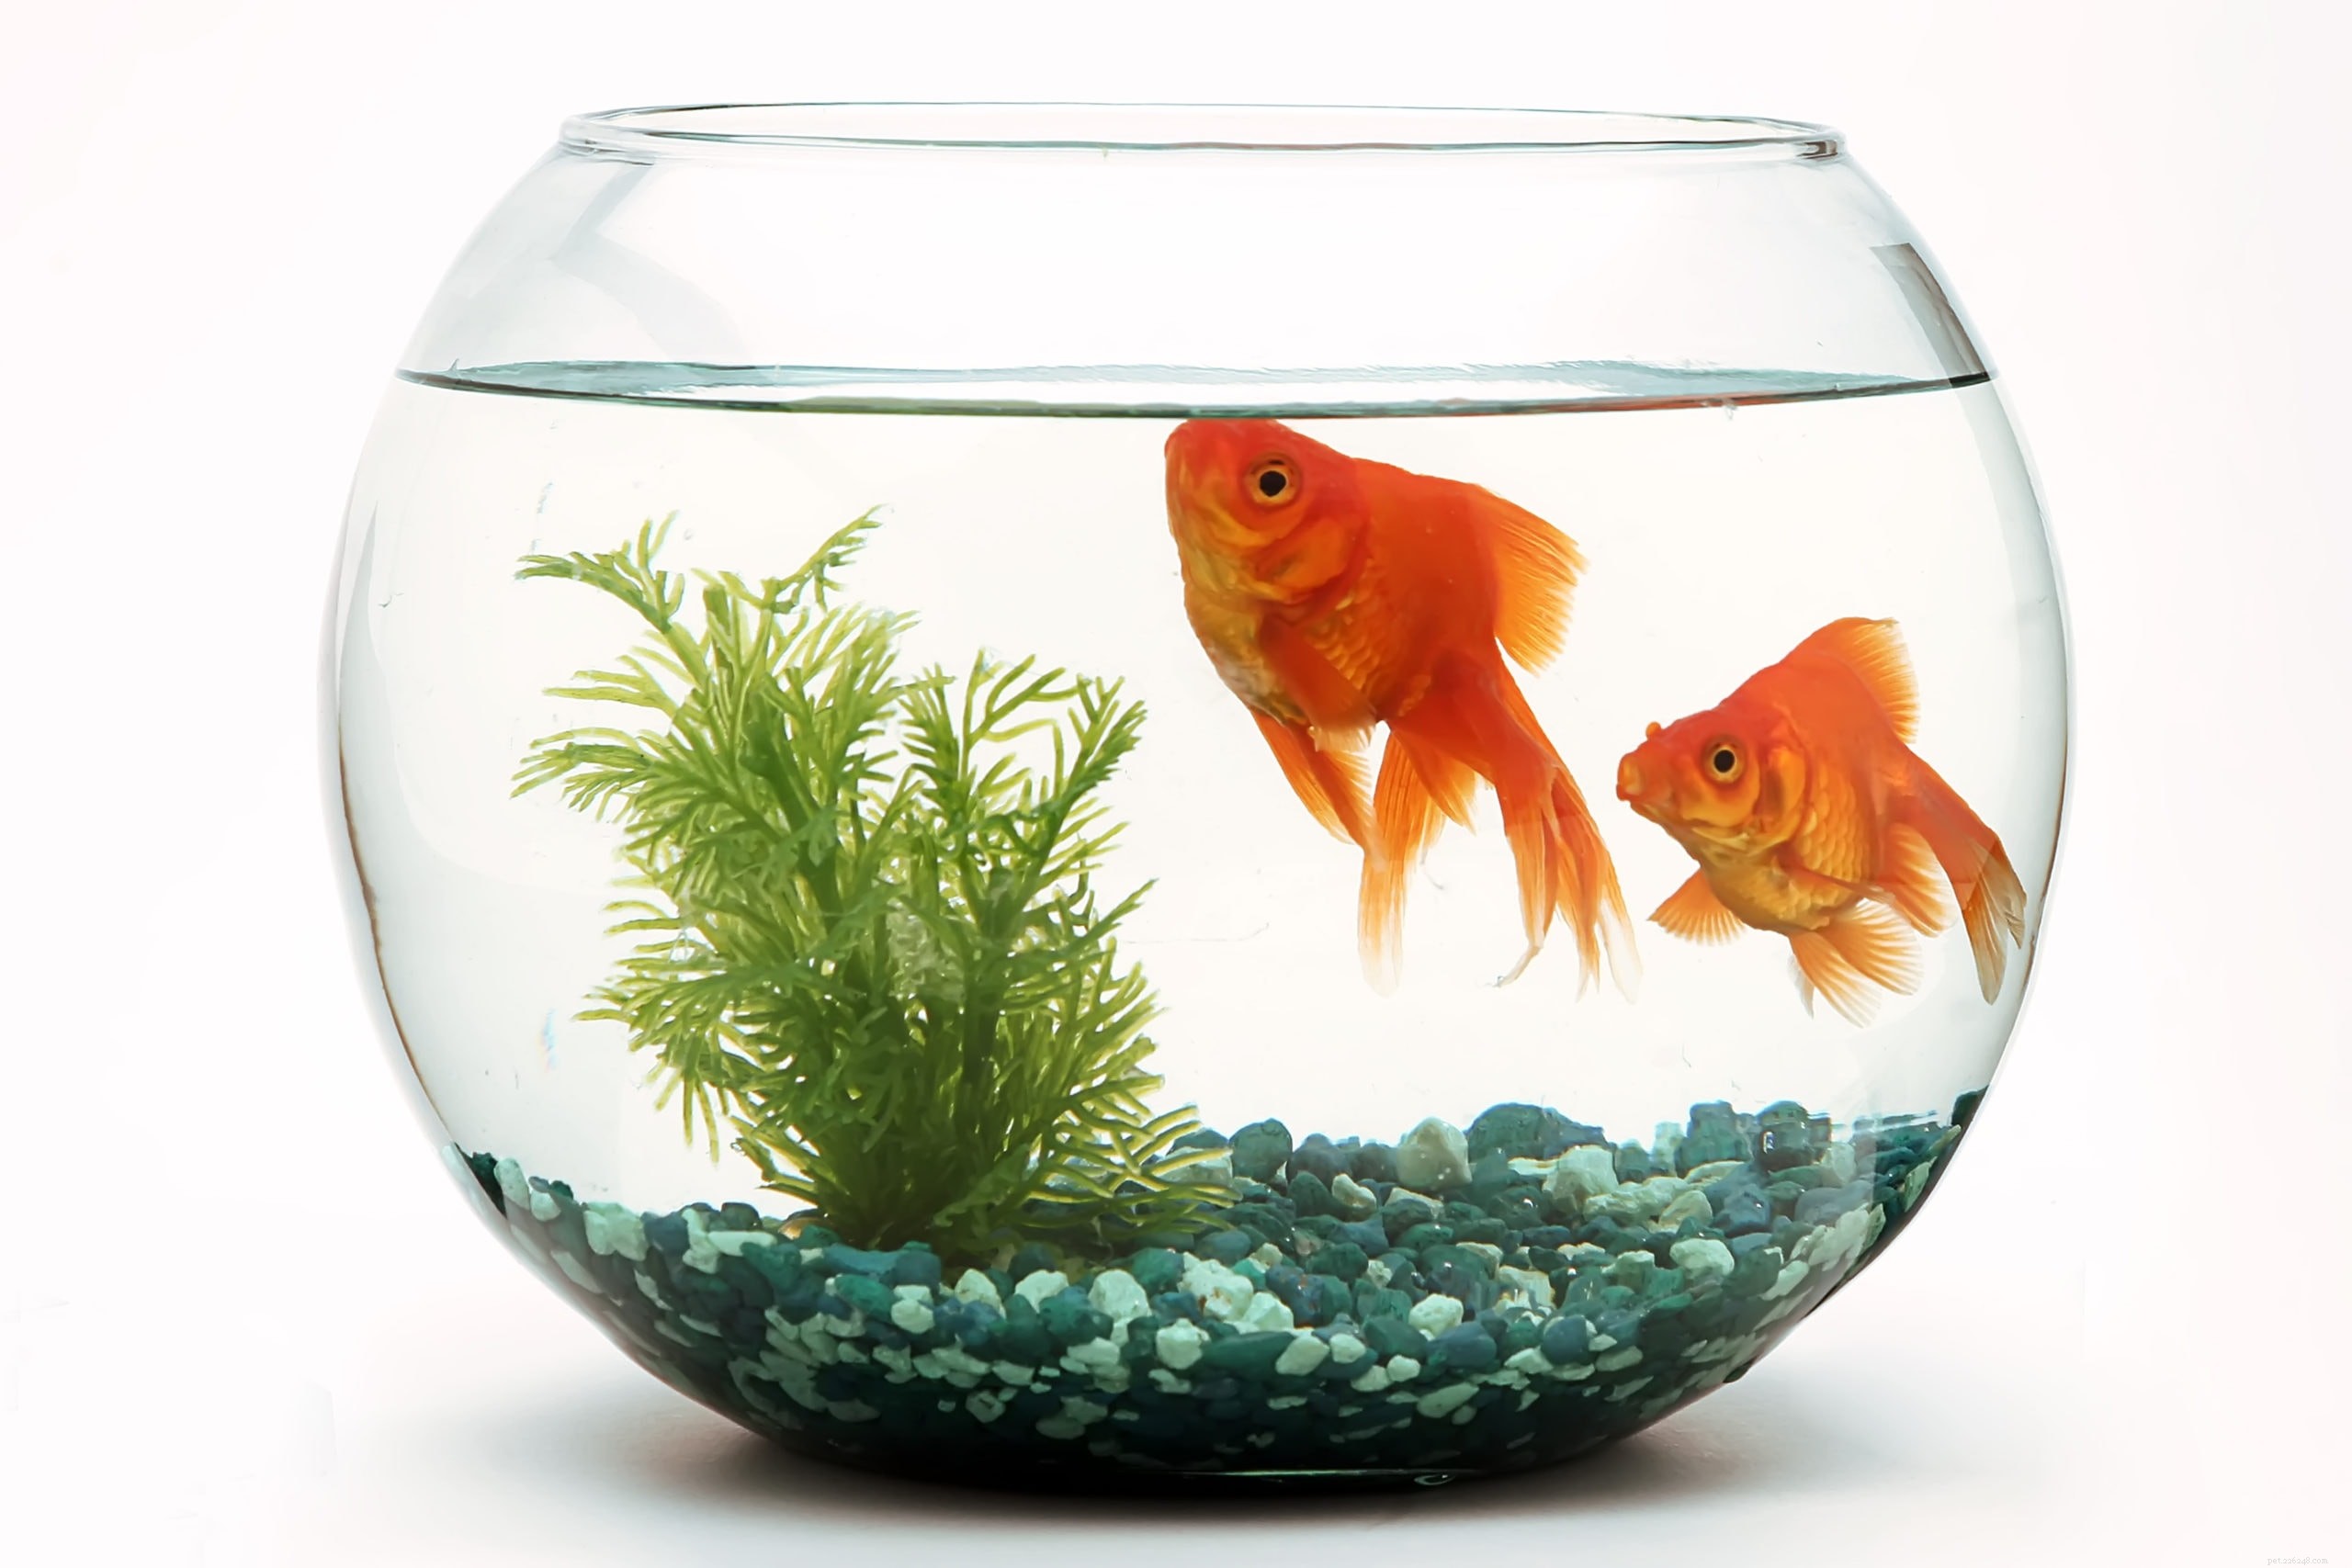 Les poissons rouges peuvent-ils prospérer dans un bocal ? La réponse surprenante